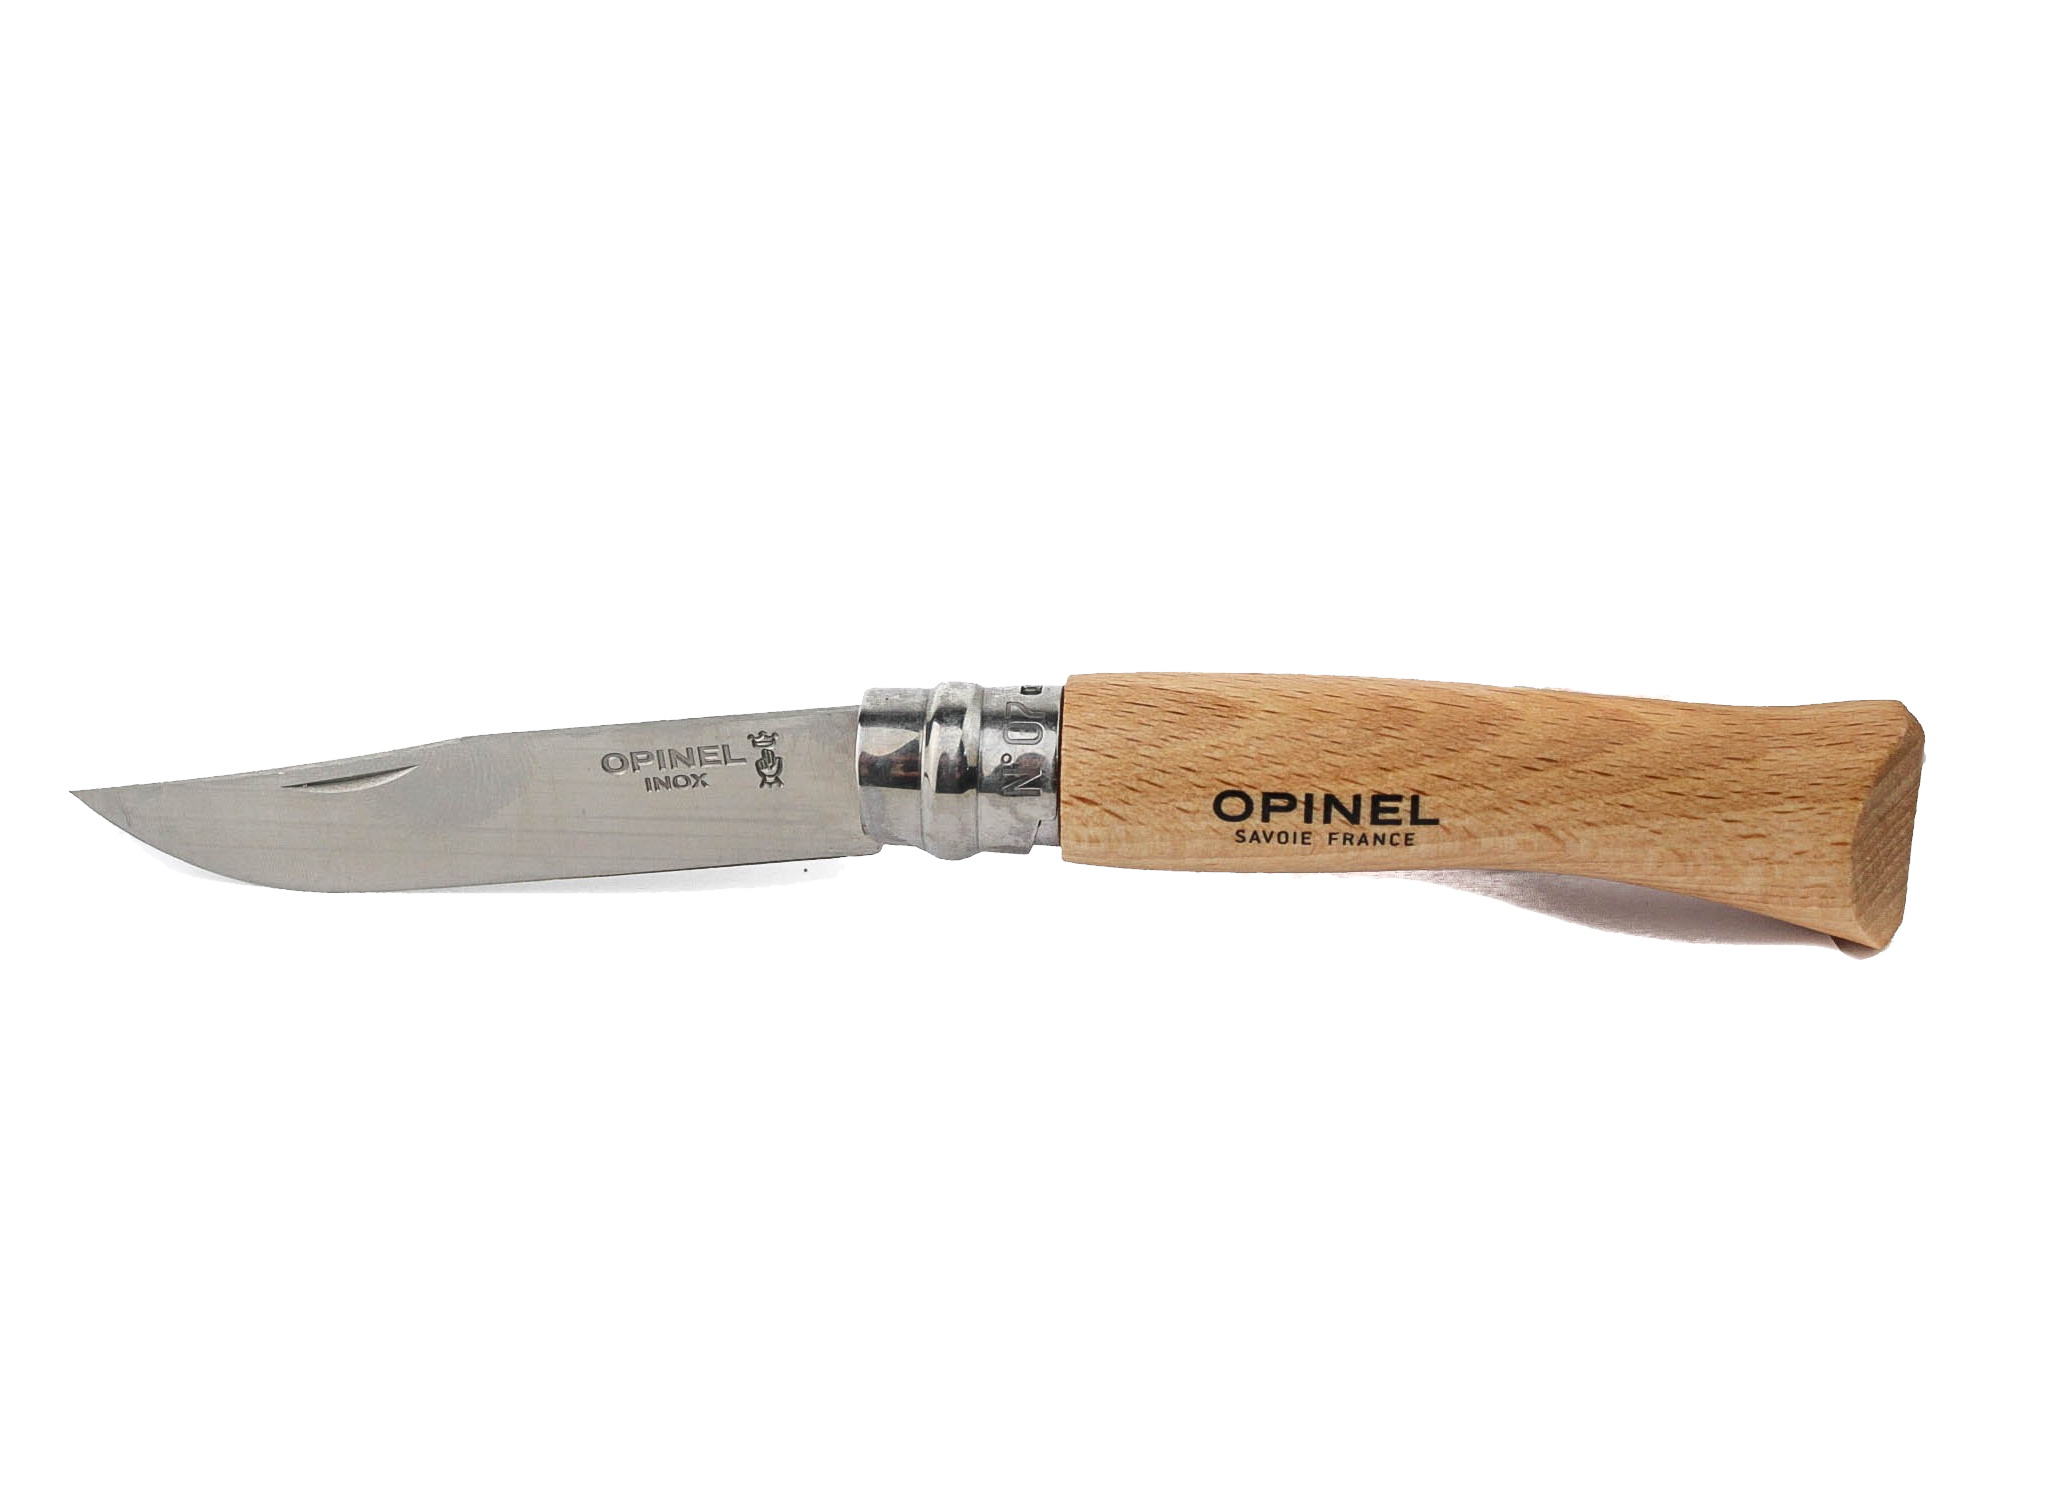 Нож Opinel 7VRI складной 8см нержавеющая сталь - фото 1